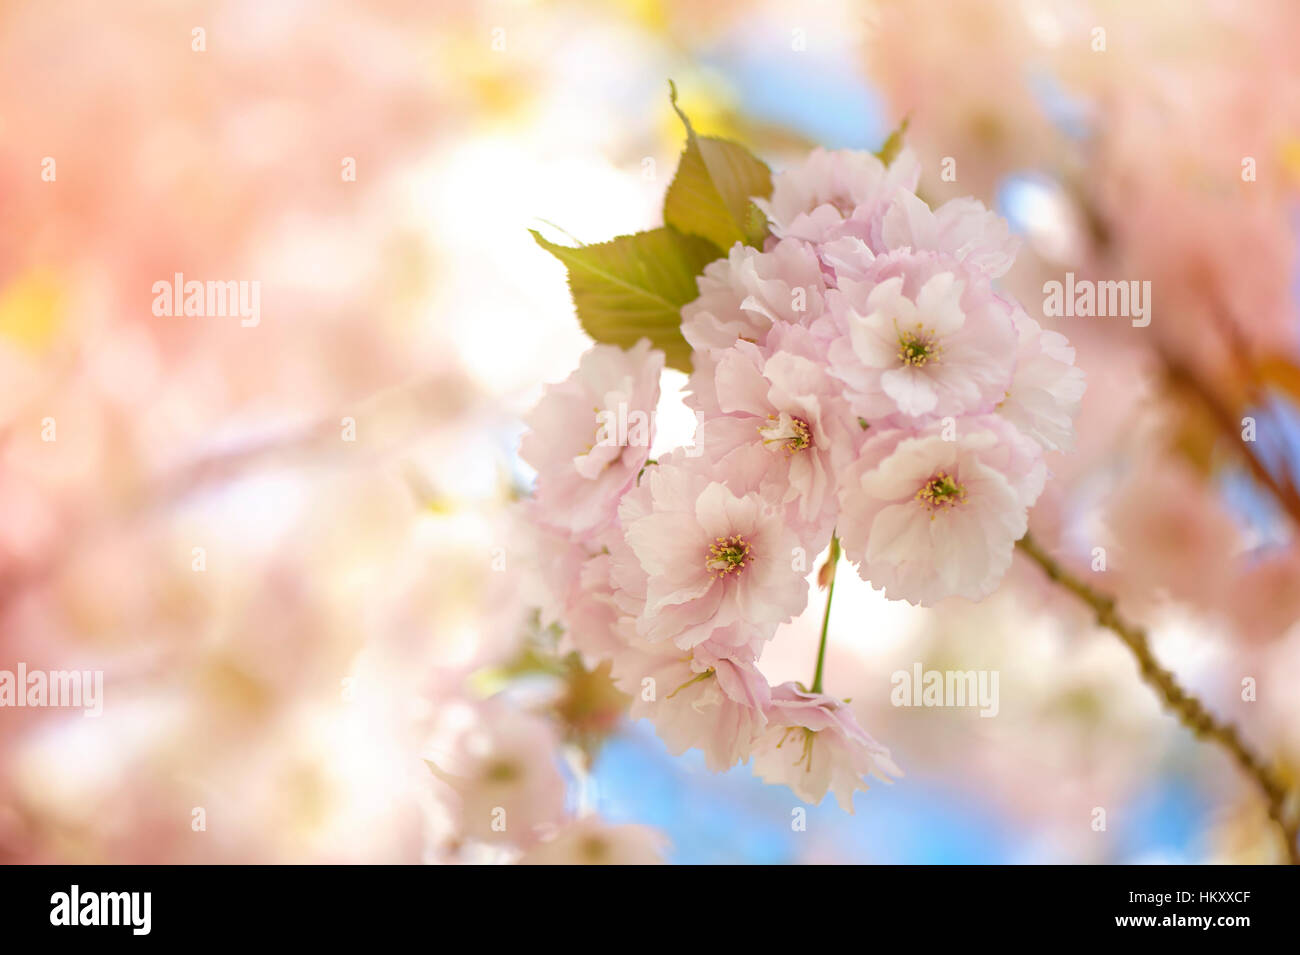 La délicate fleur rose tendre des fleurs de la Japanese flowering cherry Prunus arbre Sakura, prise à l'encontre d'un ciel bleu Banque D'Images